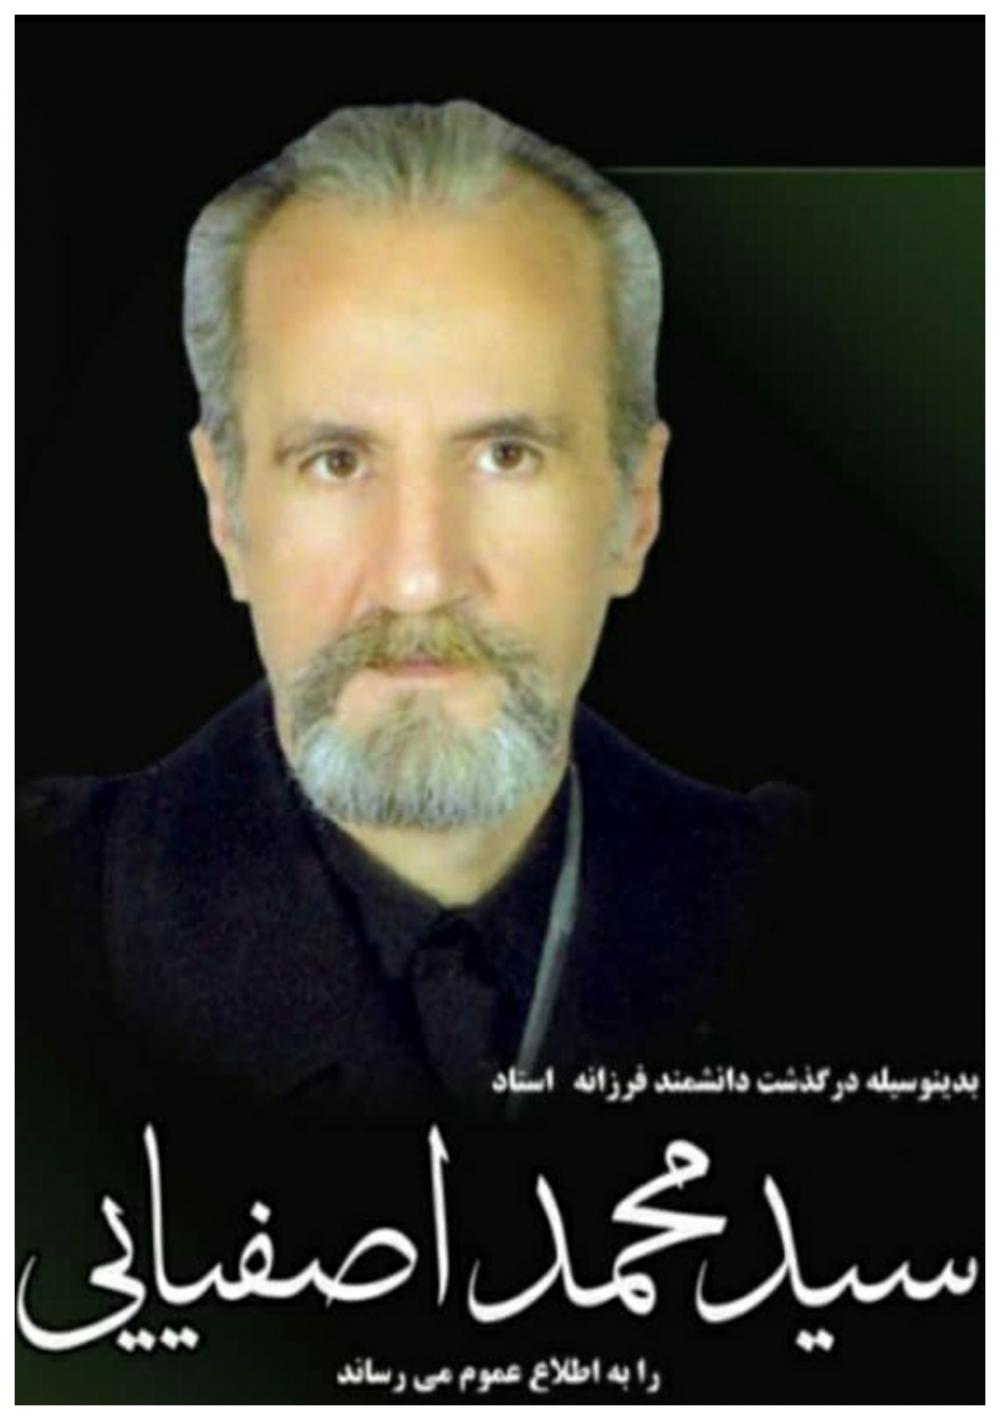 یادبود شادروان استاد فرزانه سید محمد اصفیایی